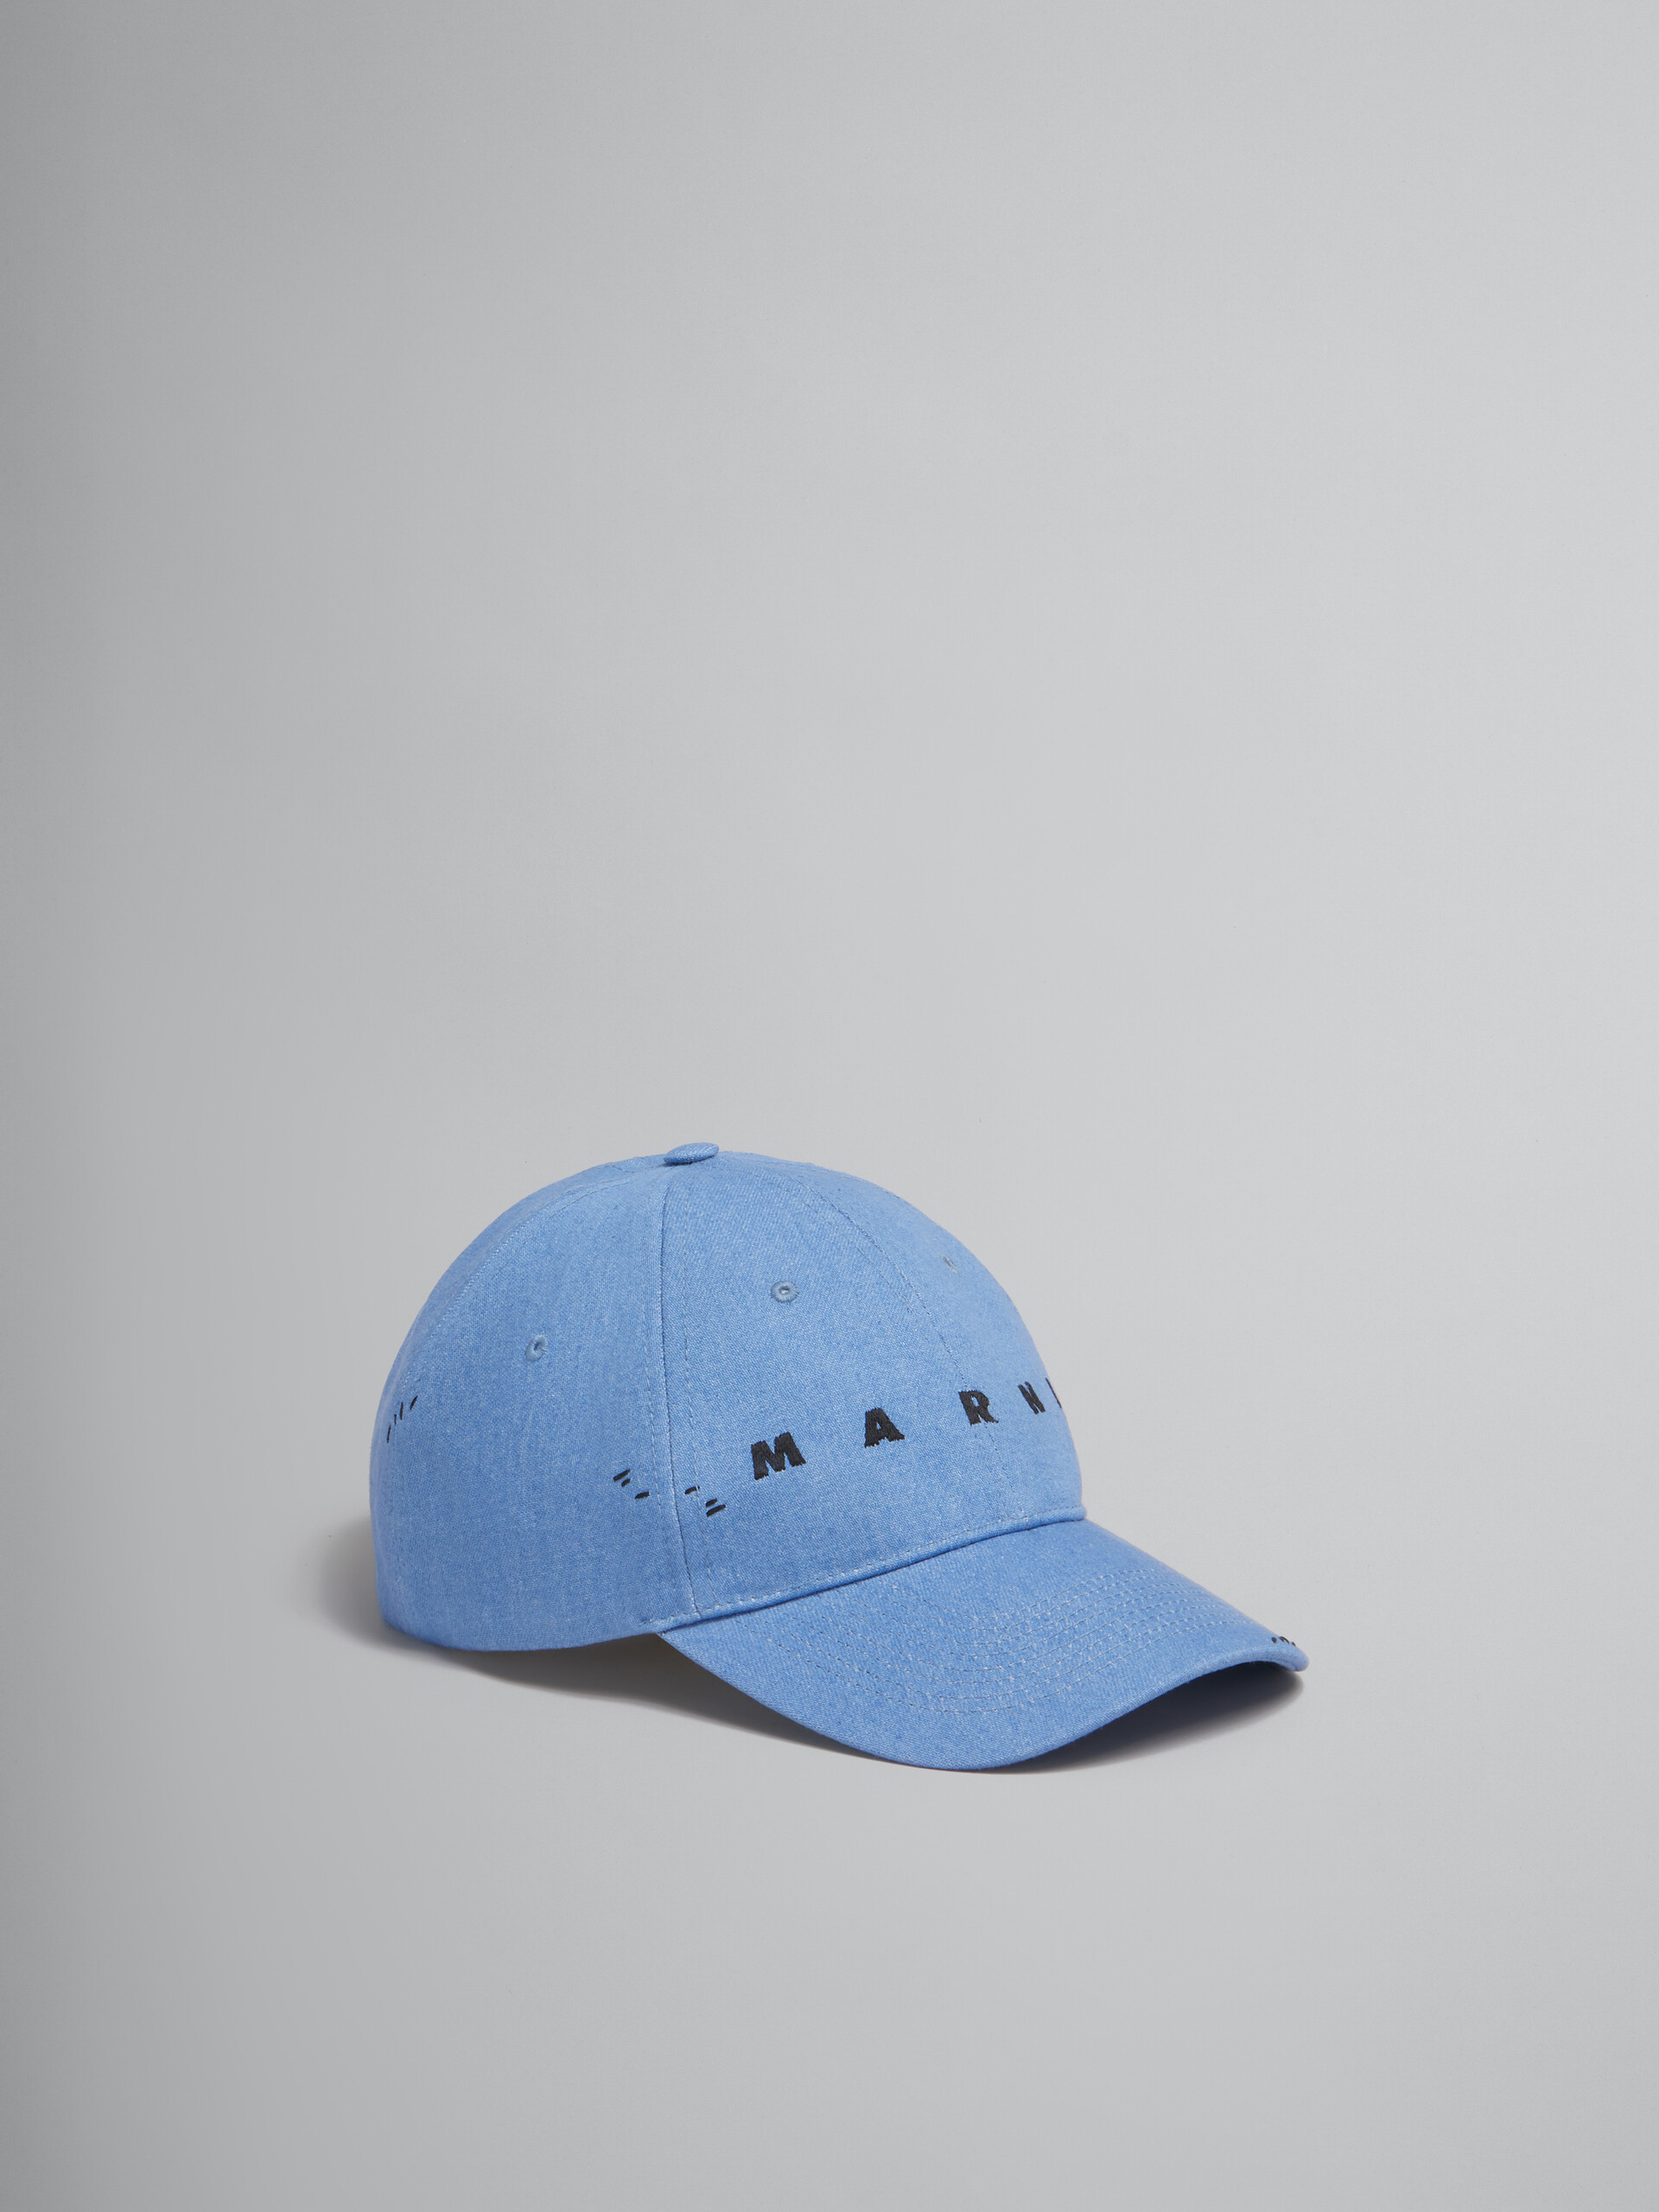 Blaue Kappe aus Denim mit Marni-Flicken - Hüte - Image 1